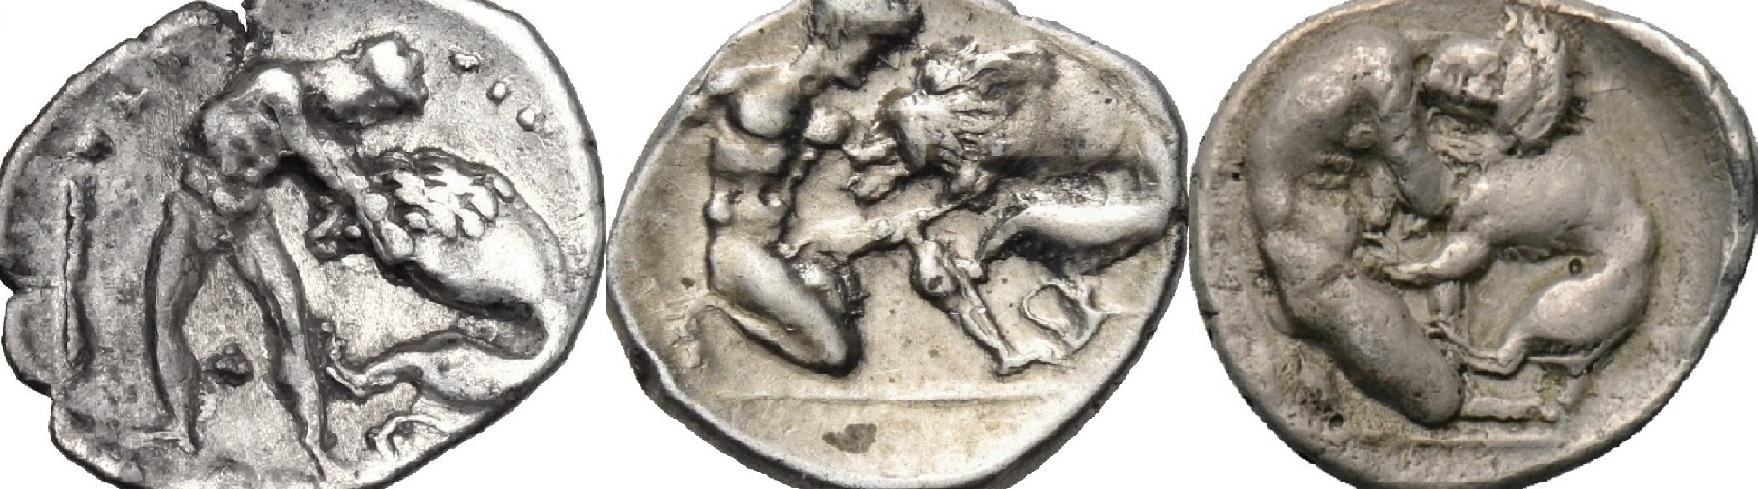 Πως ο Ηρακλής έπνιξε το λιοντάρι της Νεμέας. Νομίσματα της ελληνικής πόλης του Τάραντα στην Ιταλία απεικόνισαν τις φάσεις της πάλης